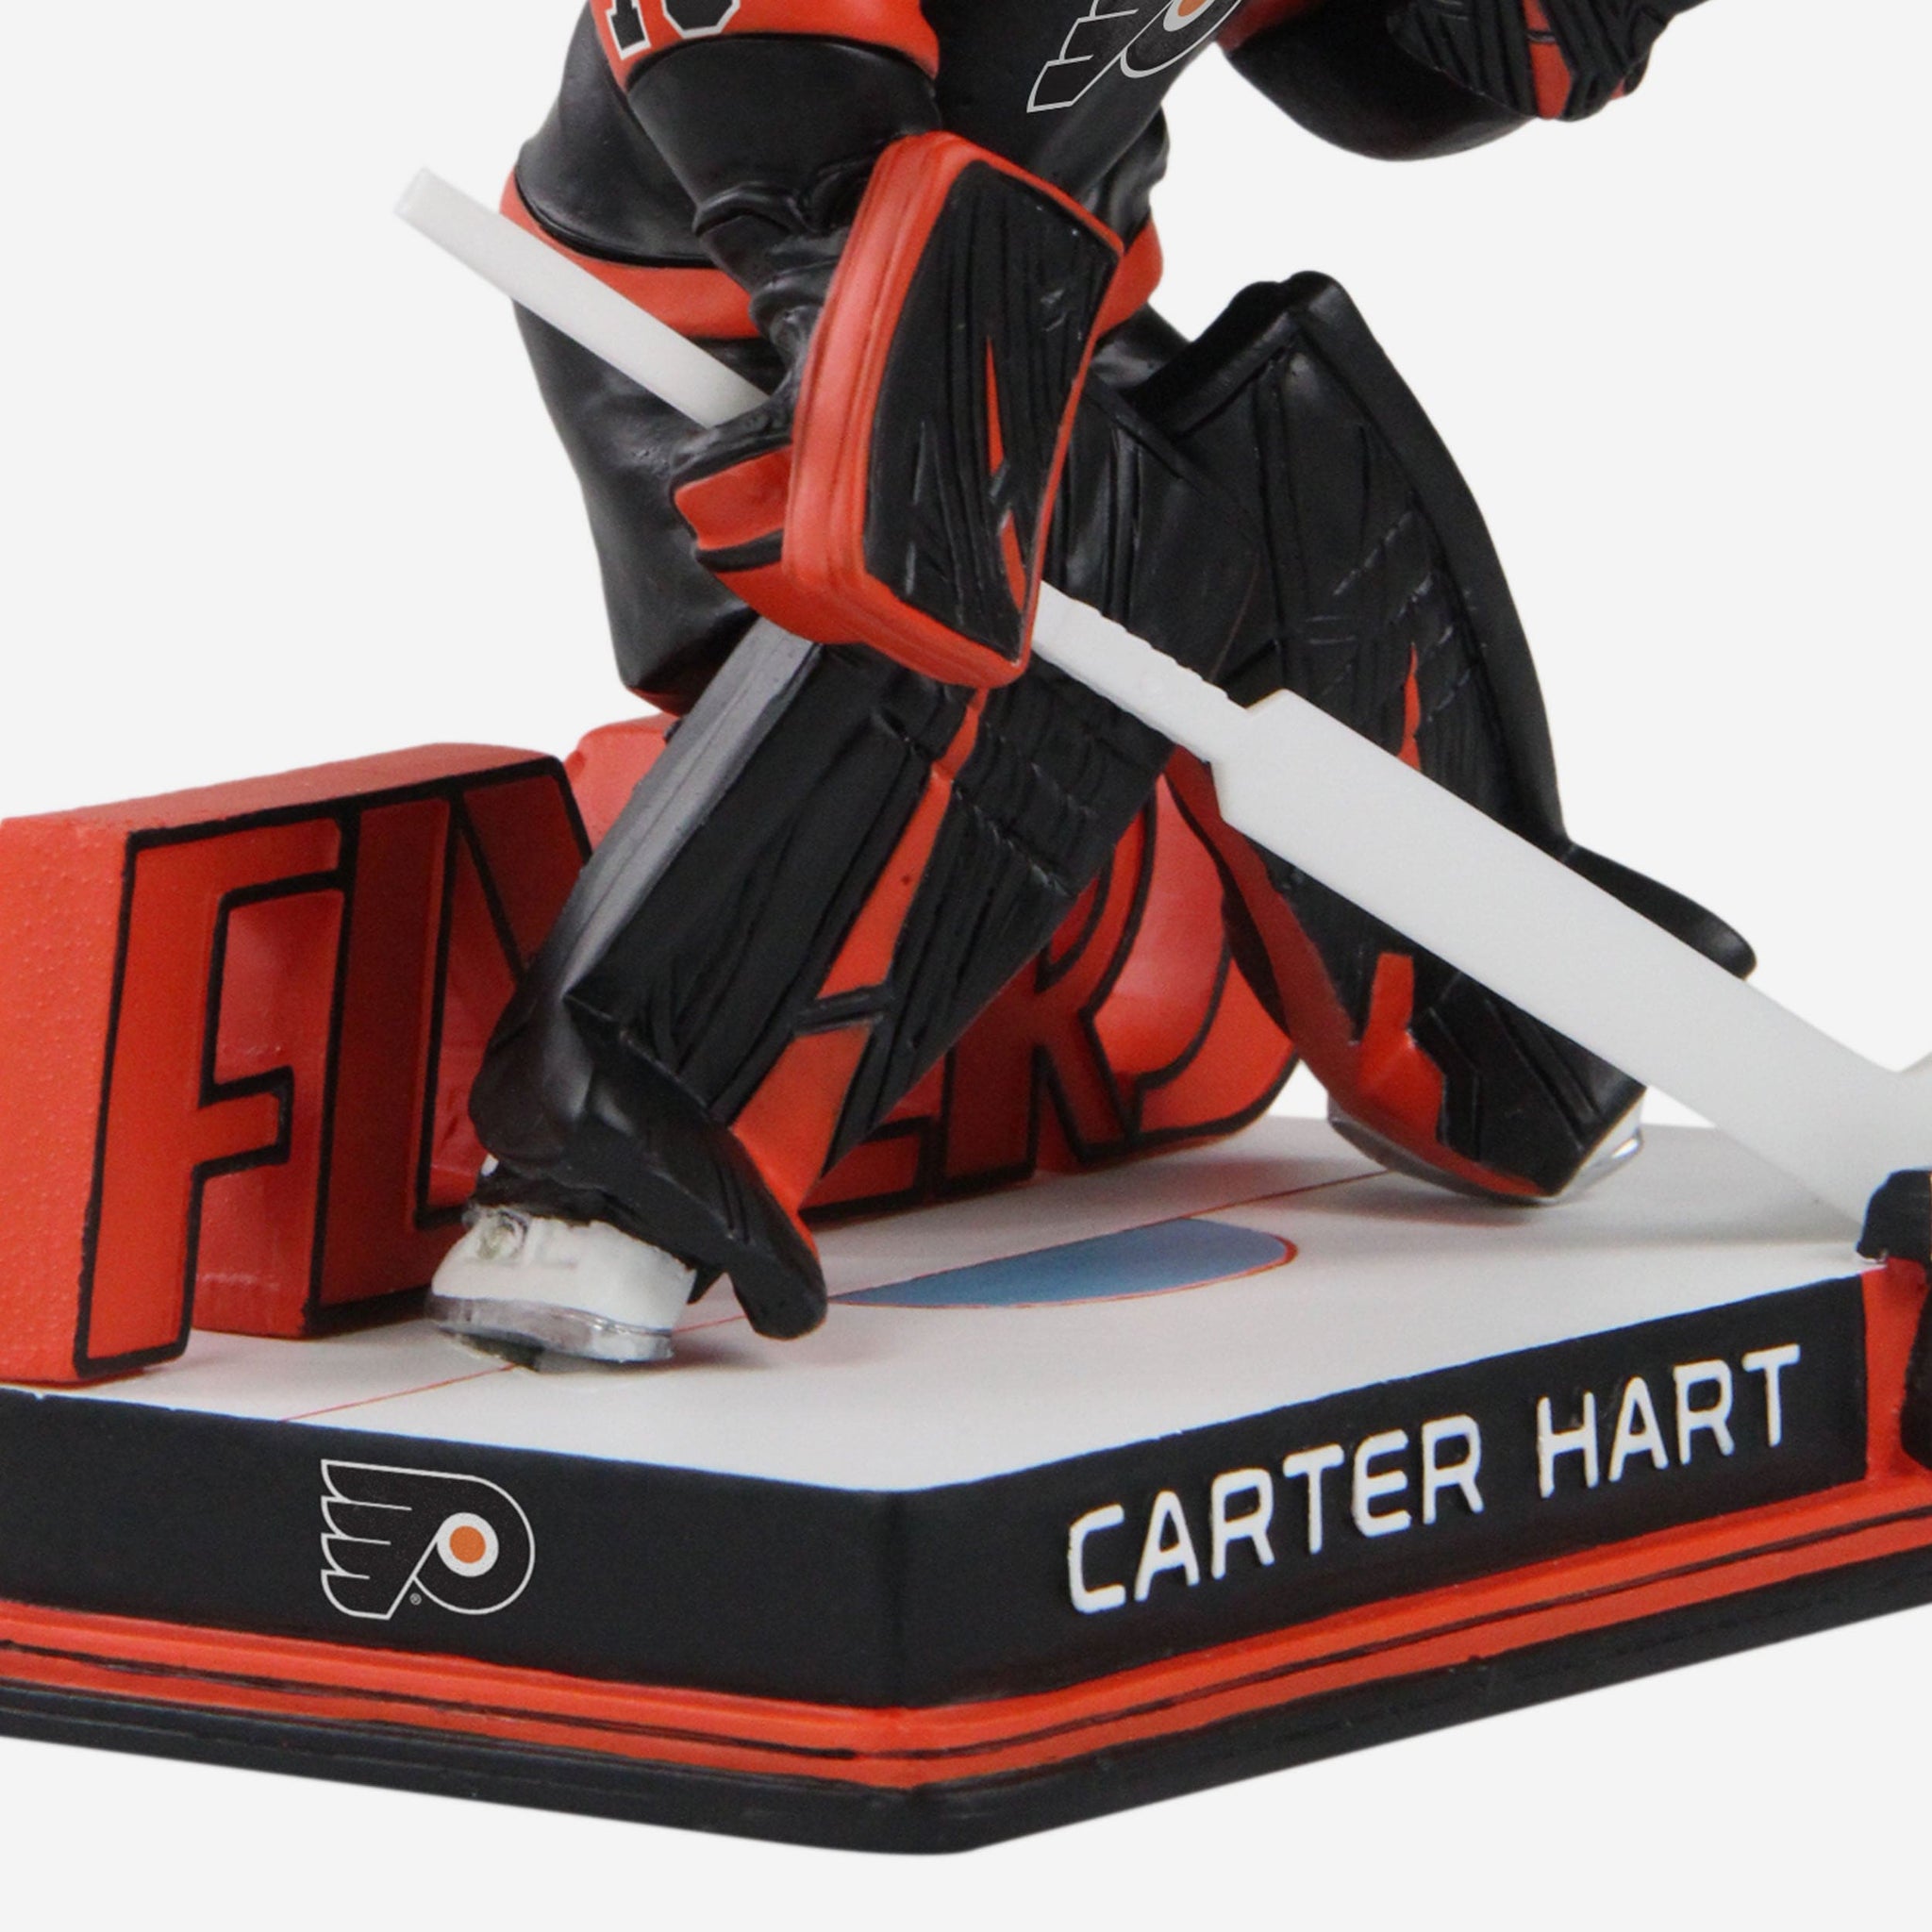 Carter Hart Philadelphia Flyers Jerseys, Carter Hart Flyers T-Shirts, Gear